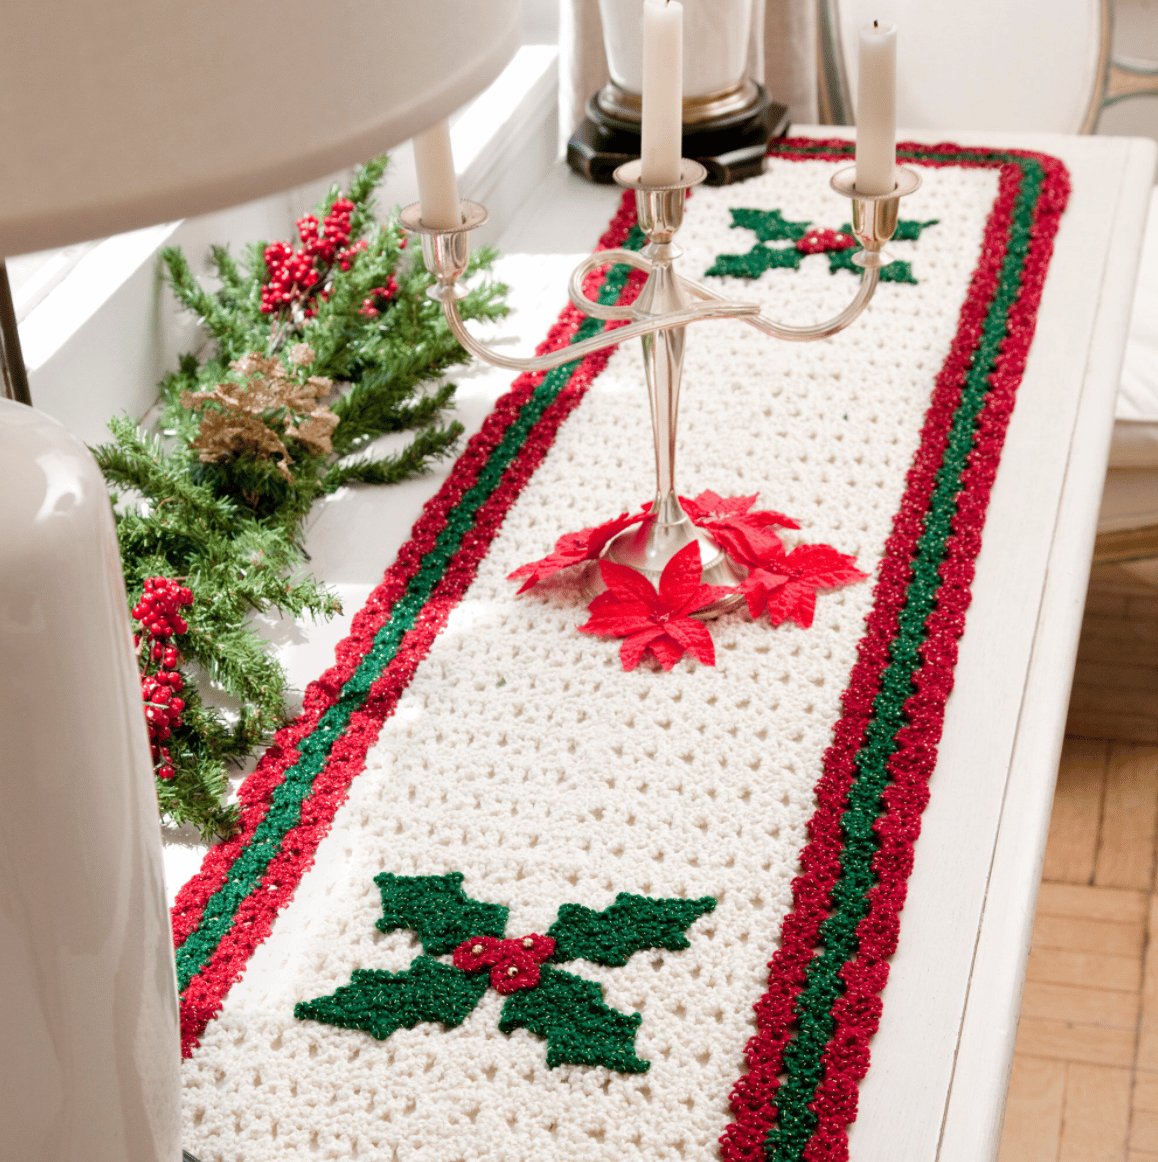 Christmas crochet table runner